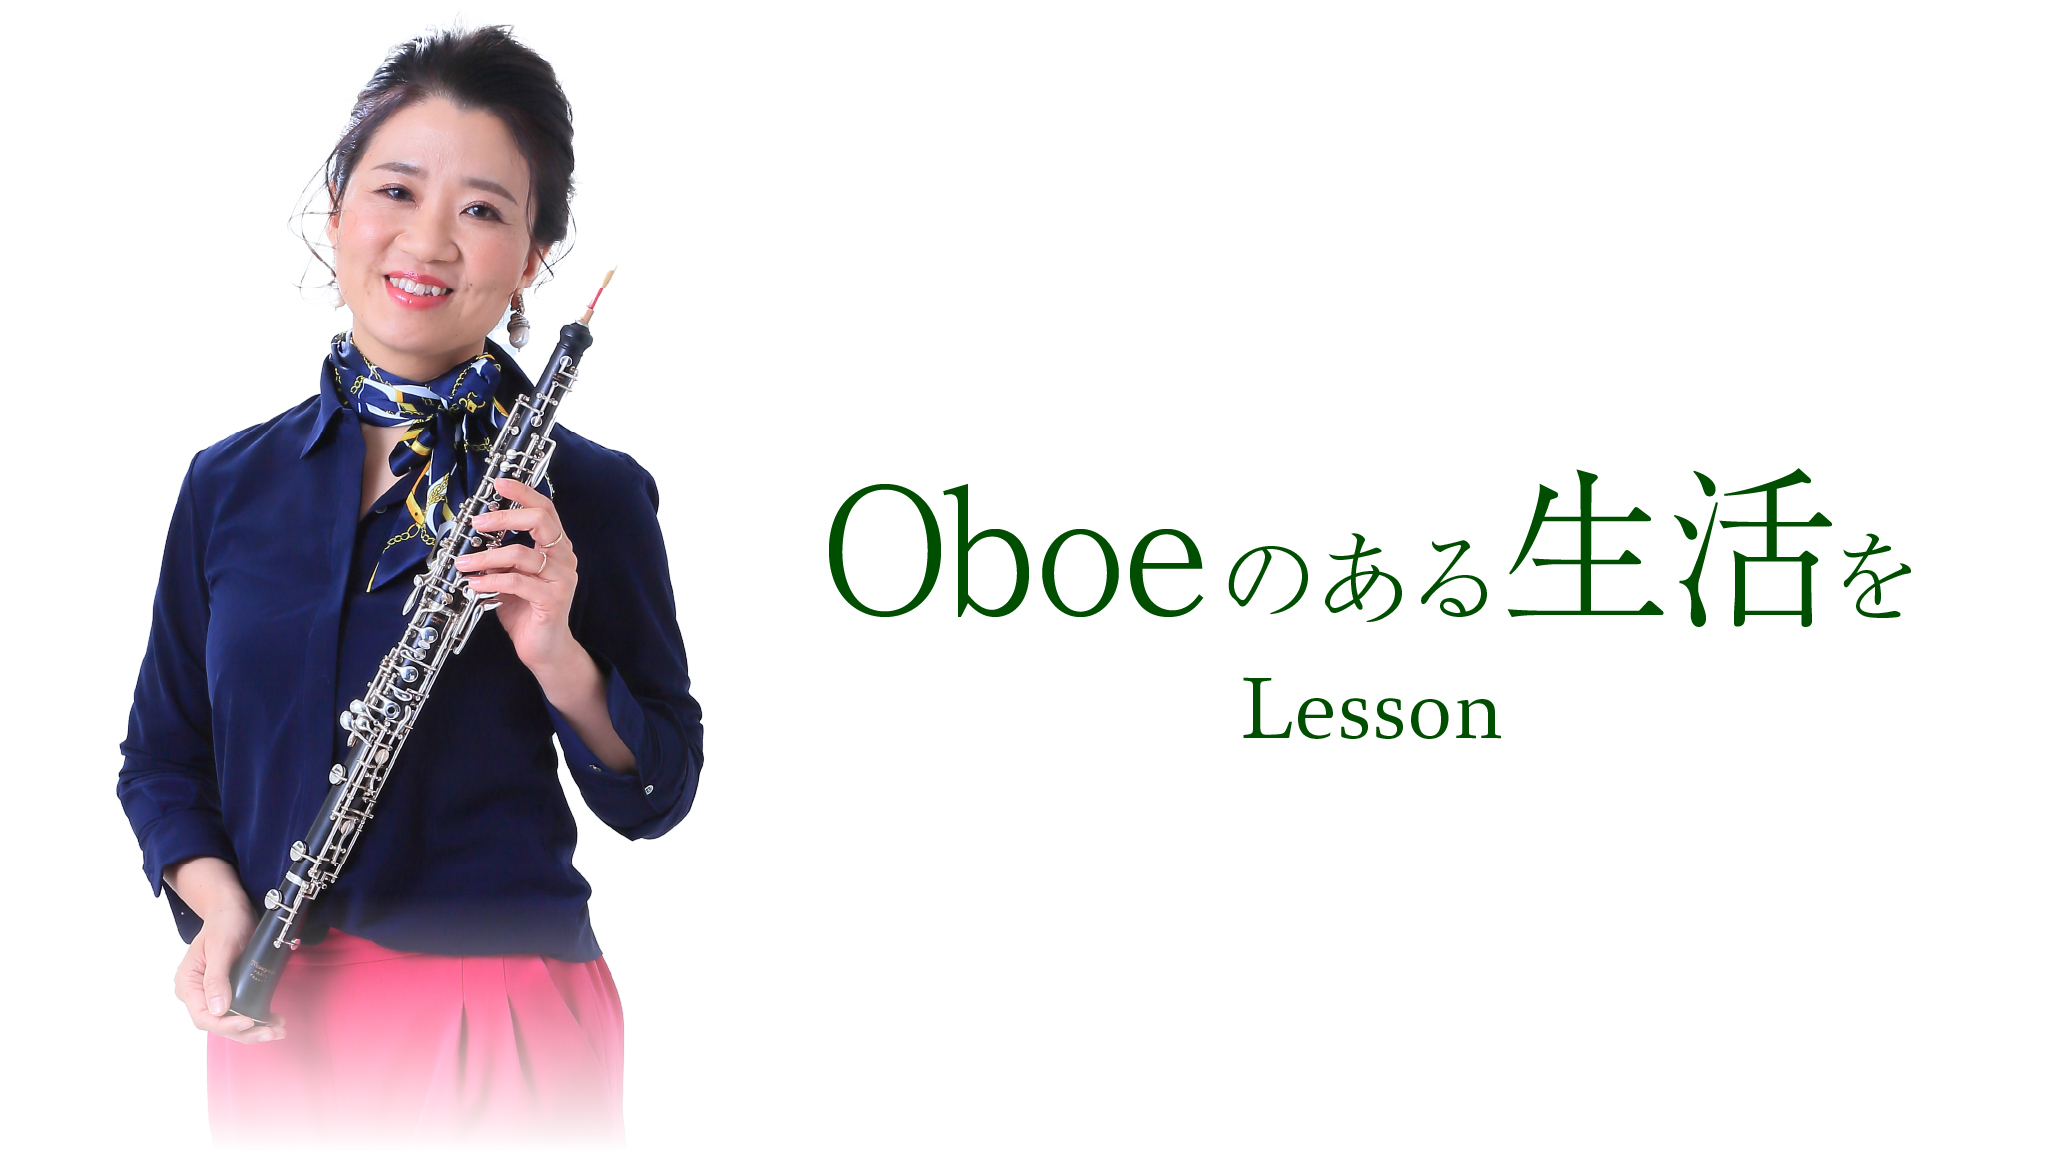 Oboeのある生活を Lesson